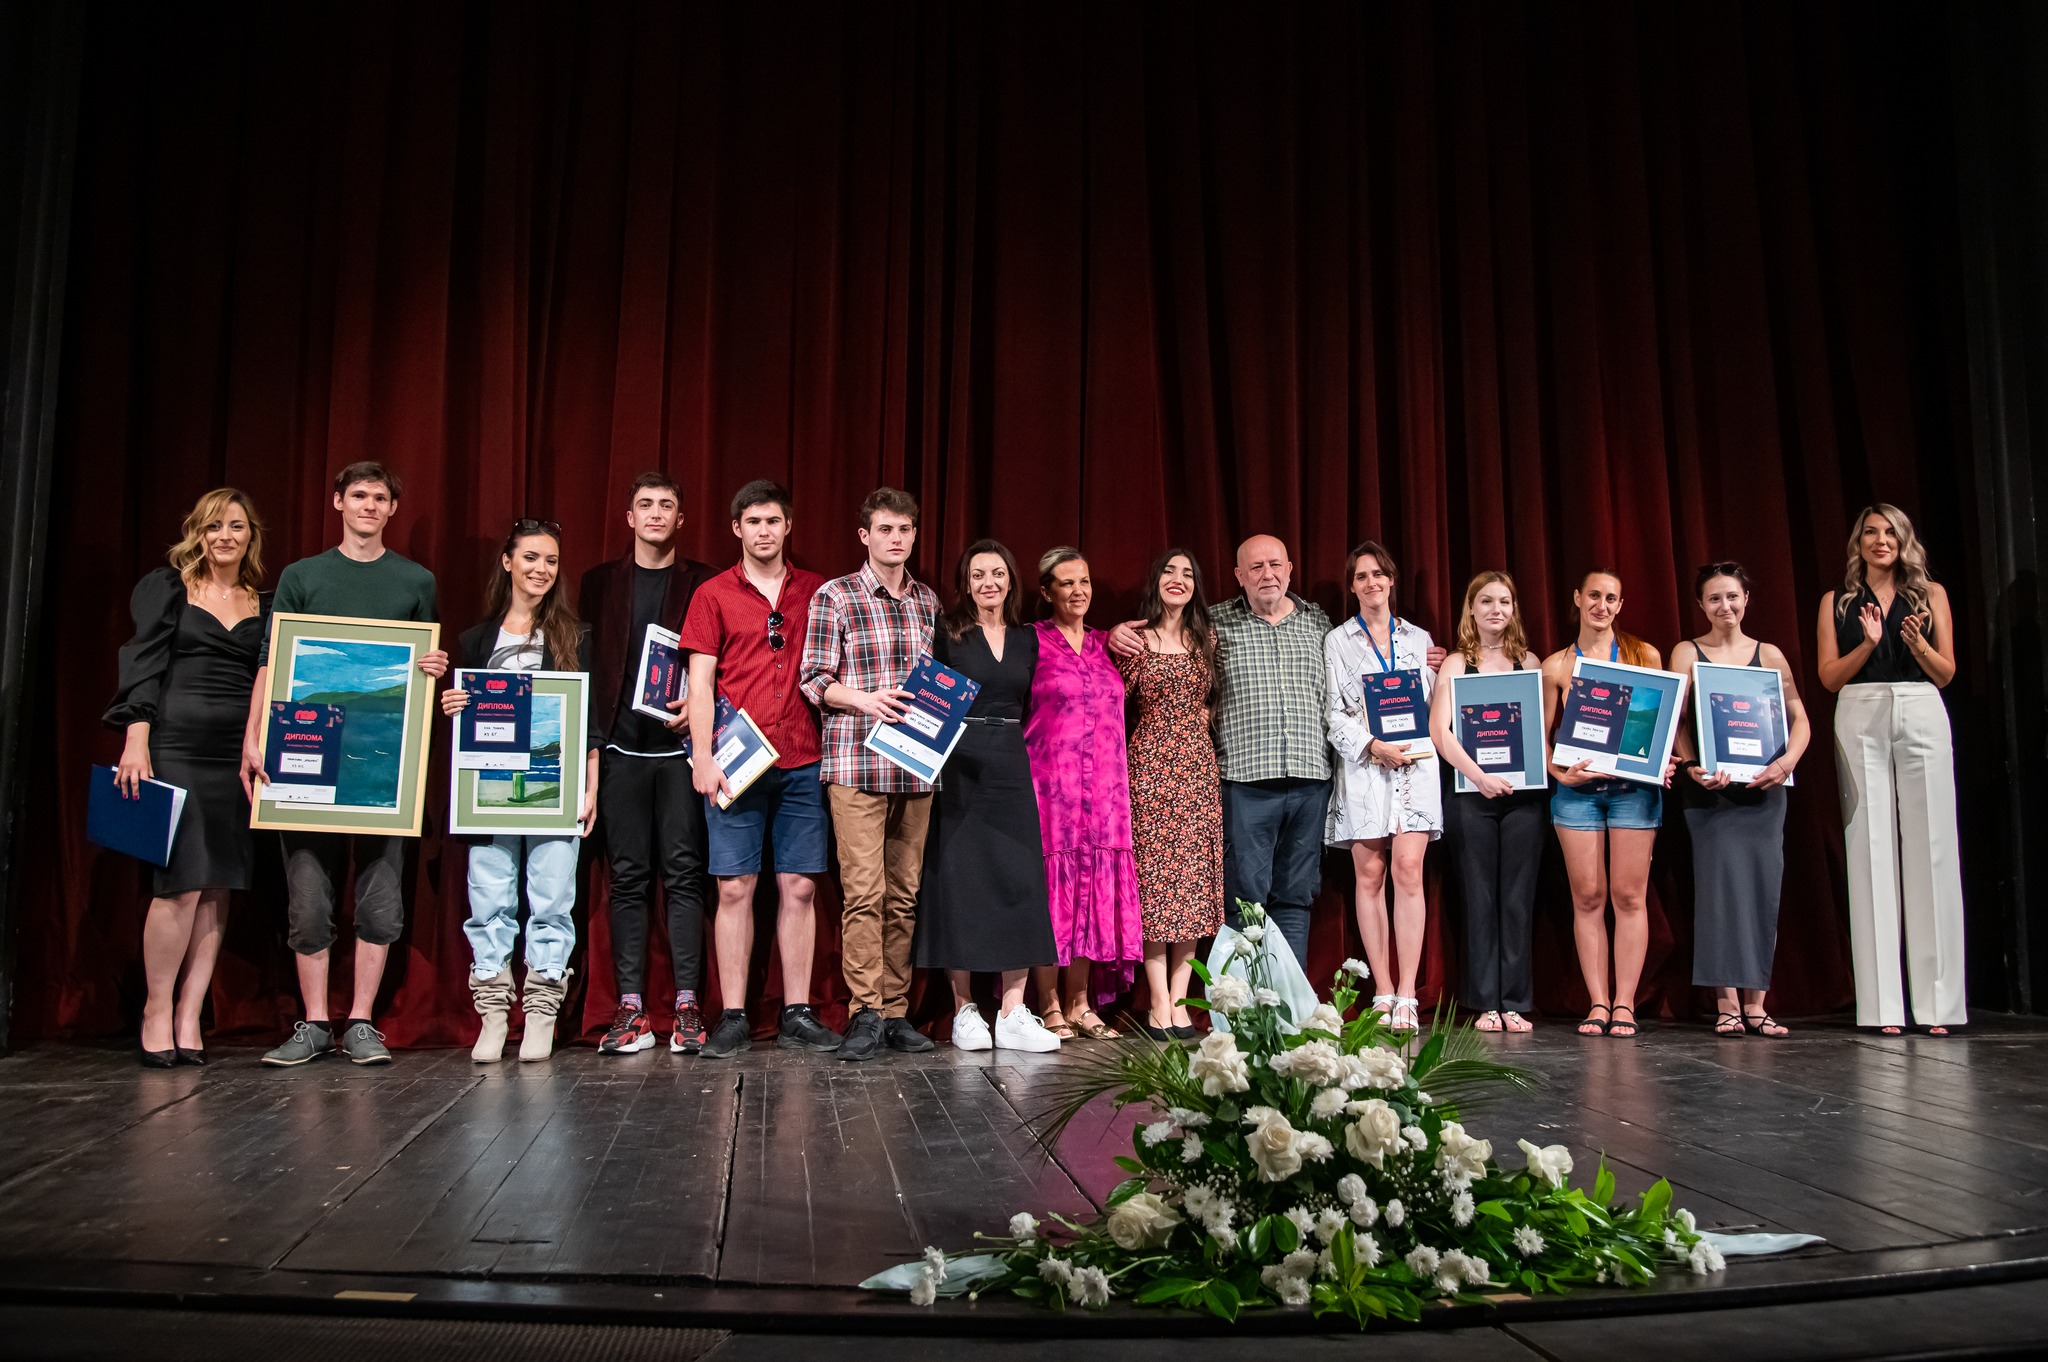 Додјелом награда најбољима завршен други Позоришни академски фестивал ПАФ!